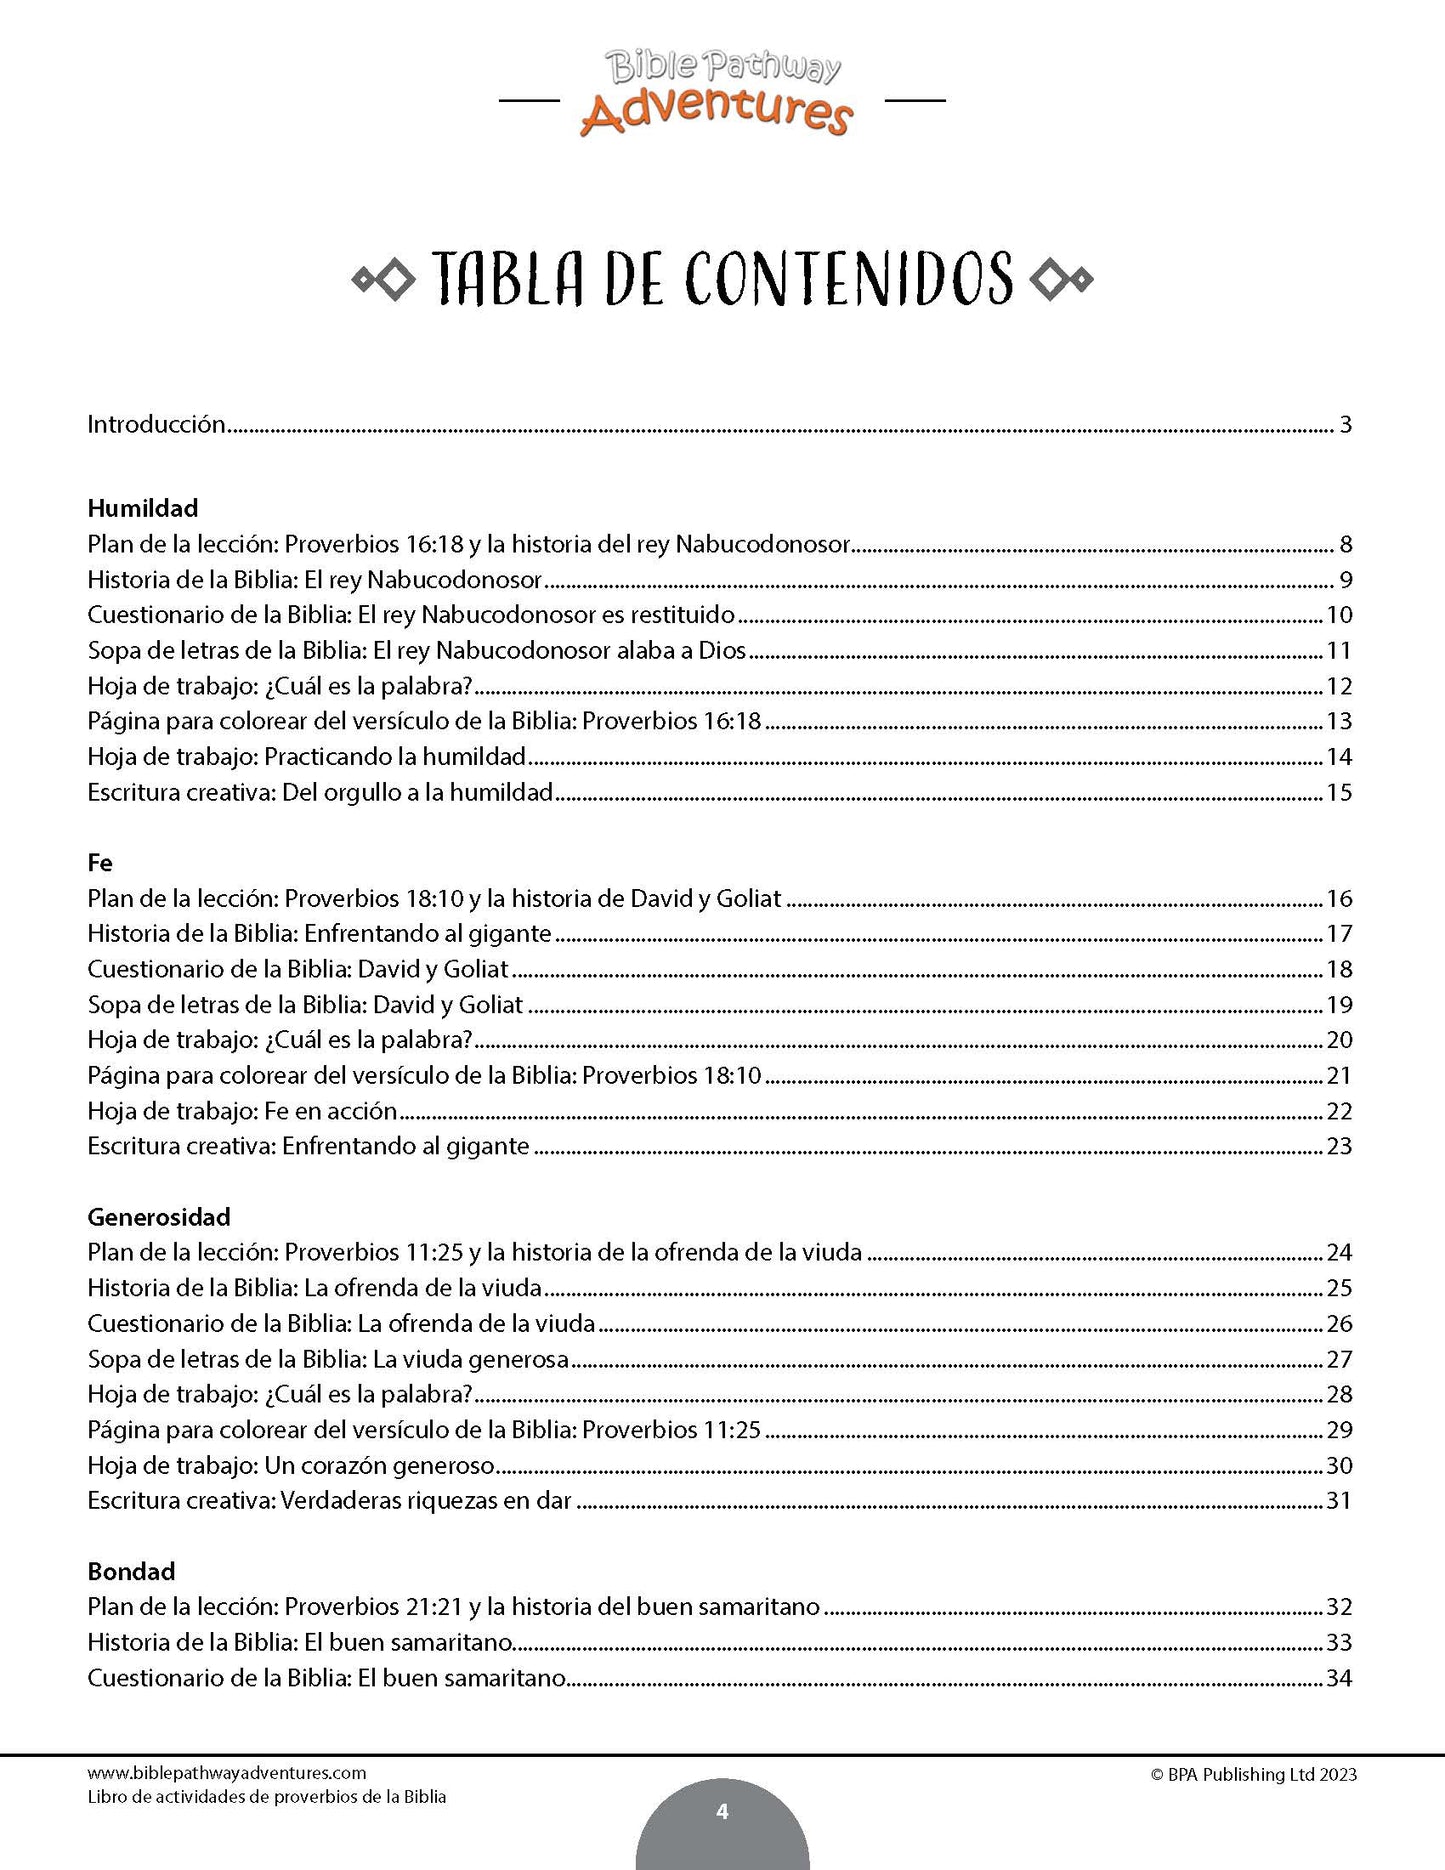 Libro de actividades de proverbios de la Biblia (paperback)